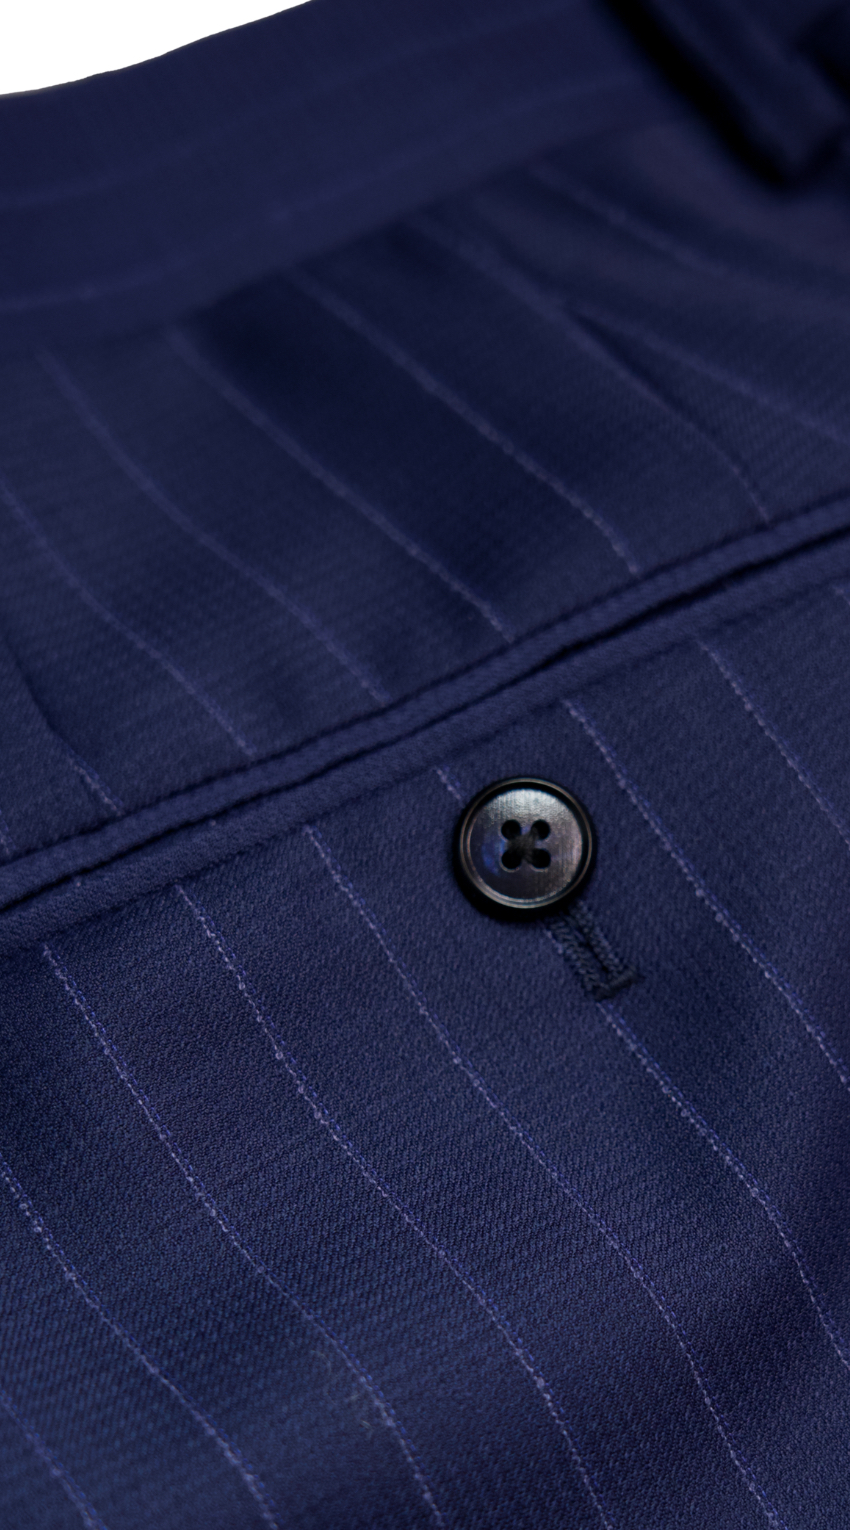 Cobalt Blue Pinstripe Suit by SUITABLEE